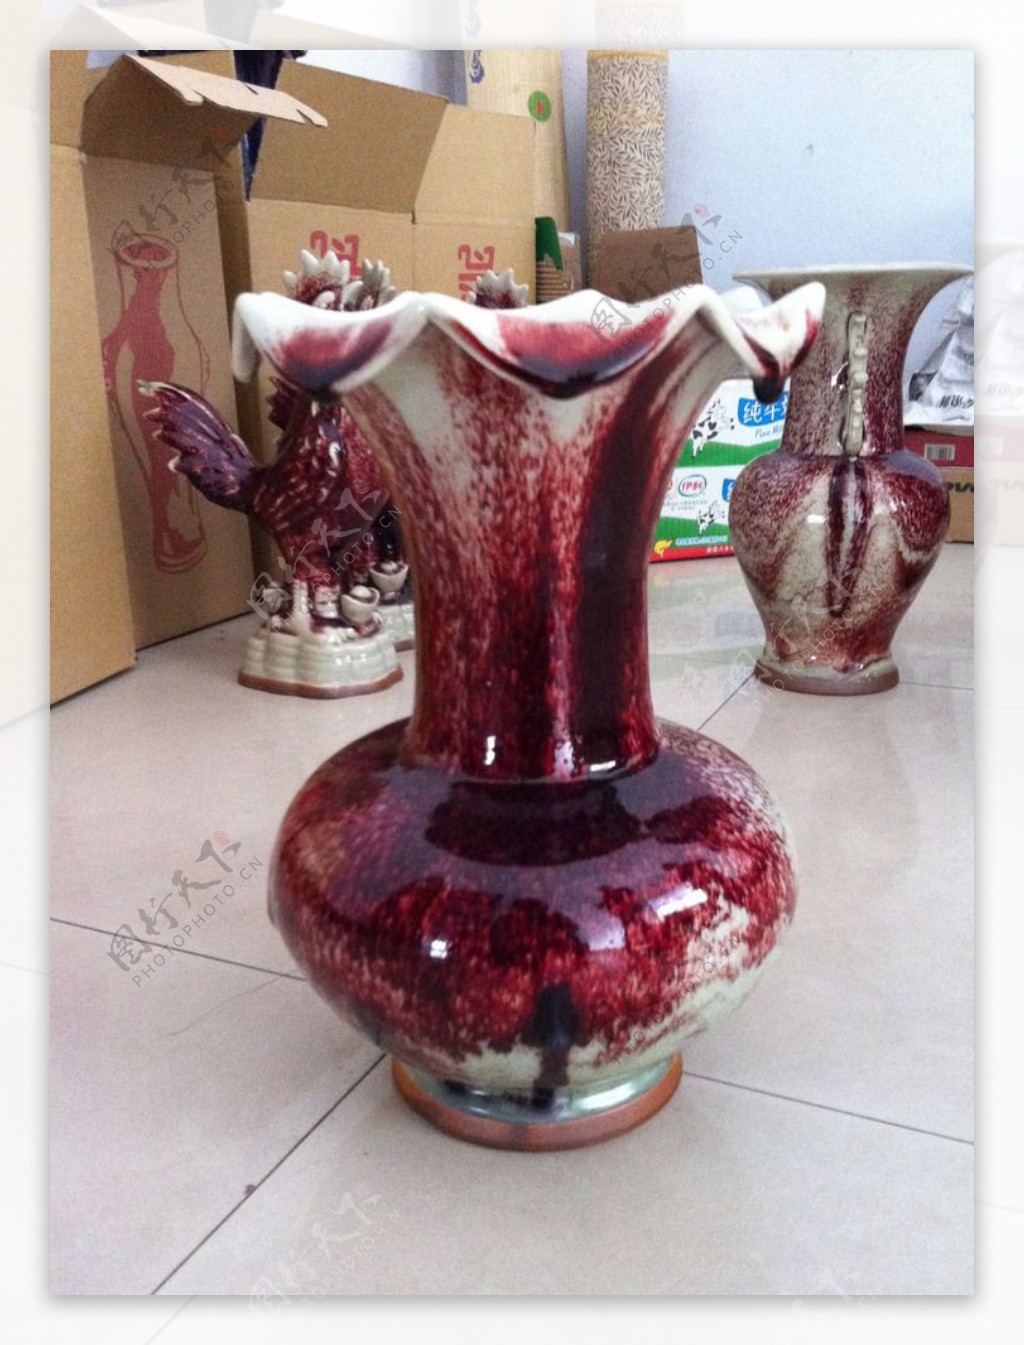 钧瓷花瓶